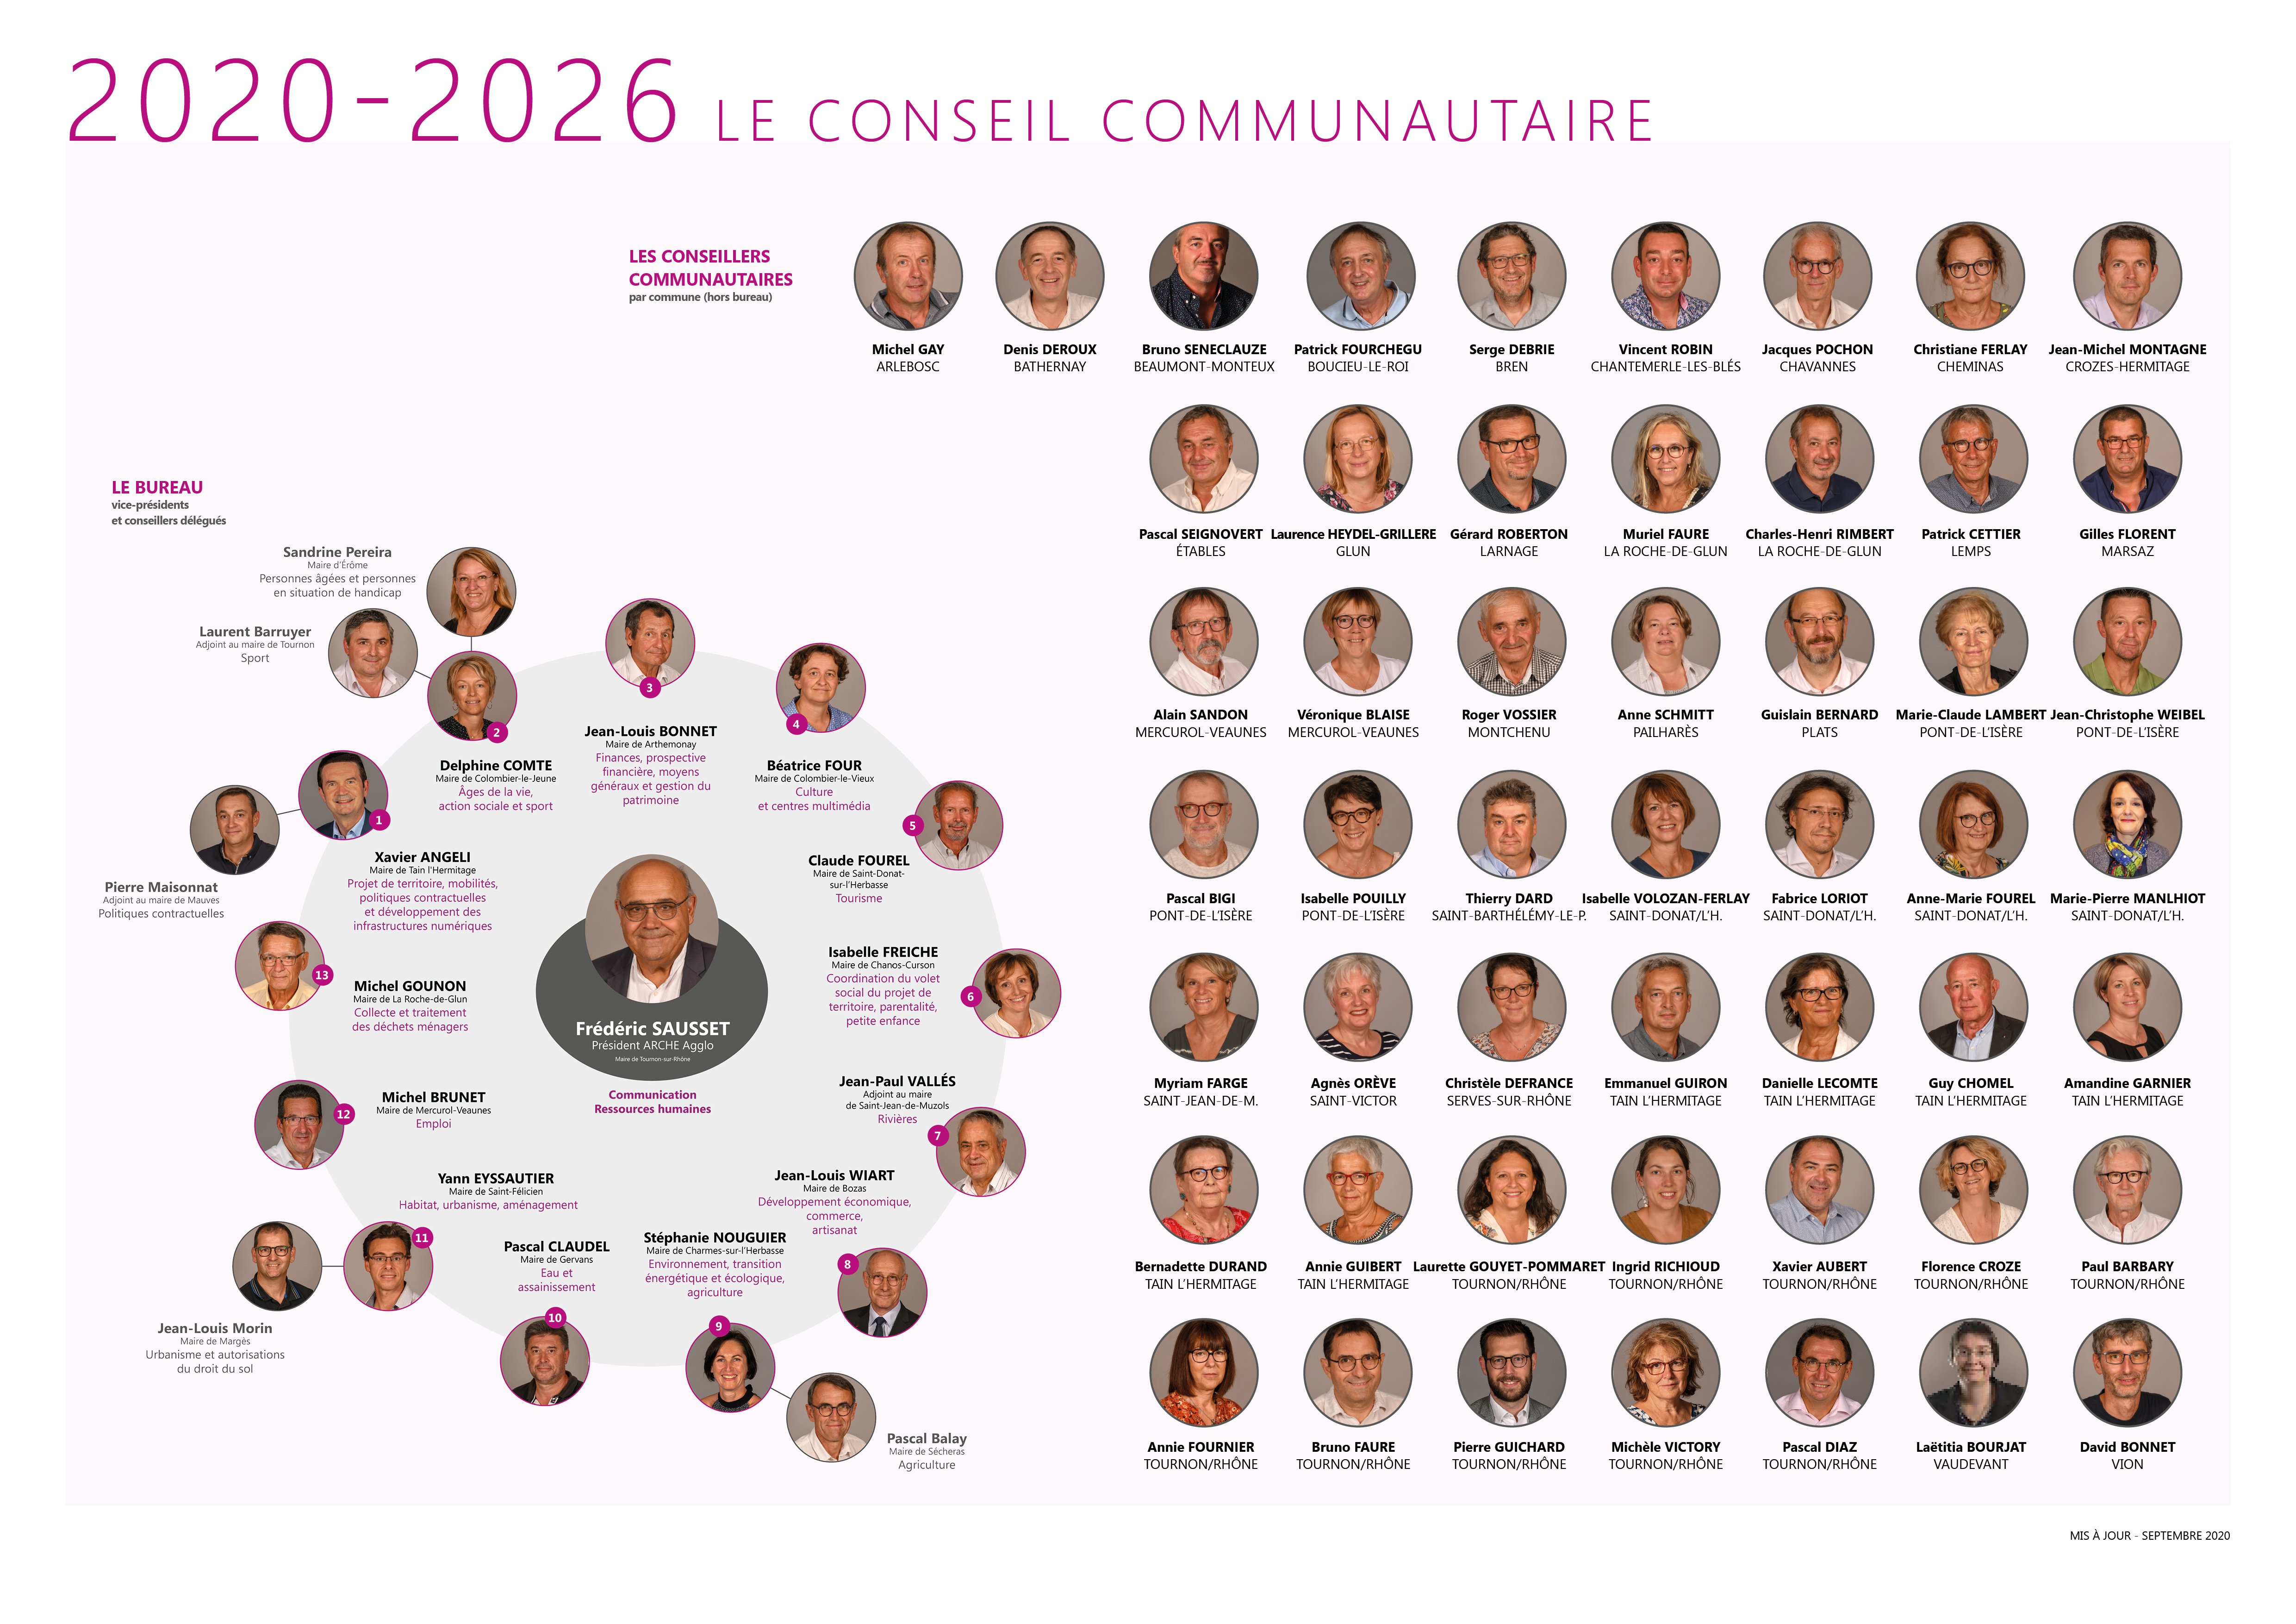 trombinoscope_CONSEIL COMMUNAUTAIRE 2020 2026.jpg